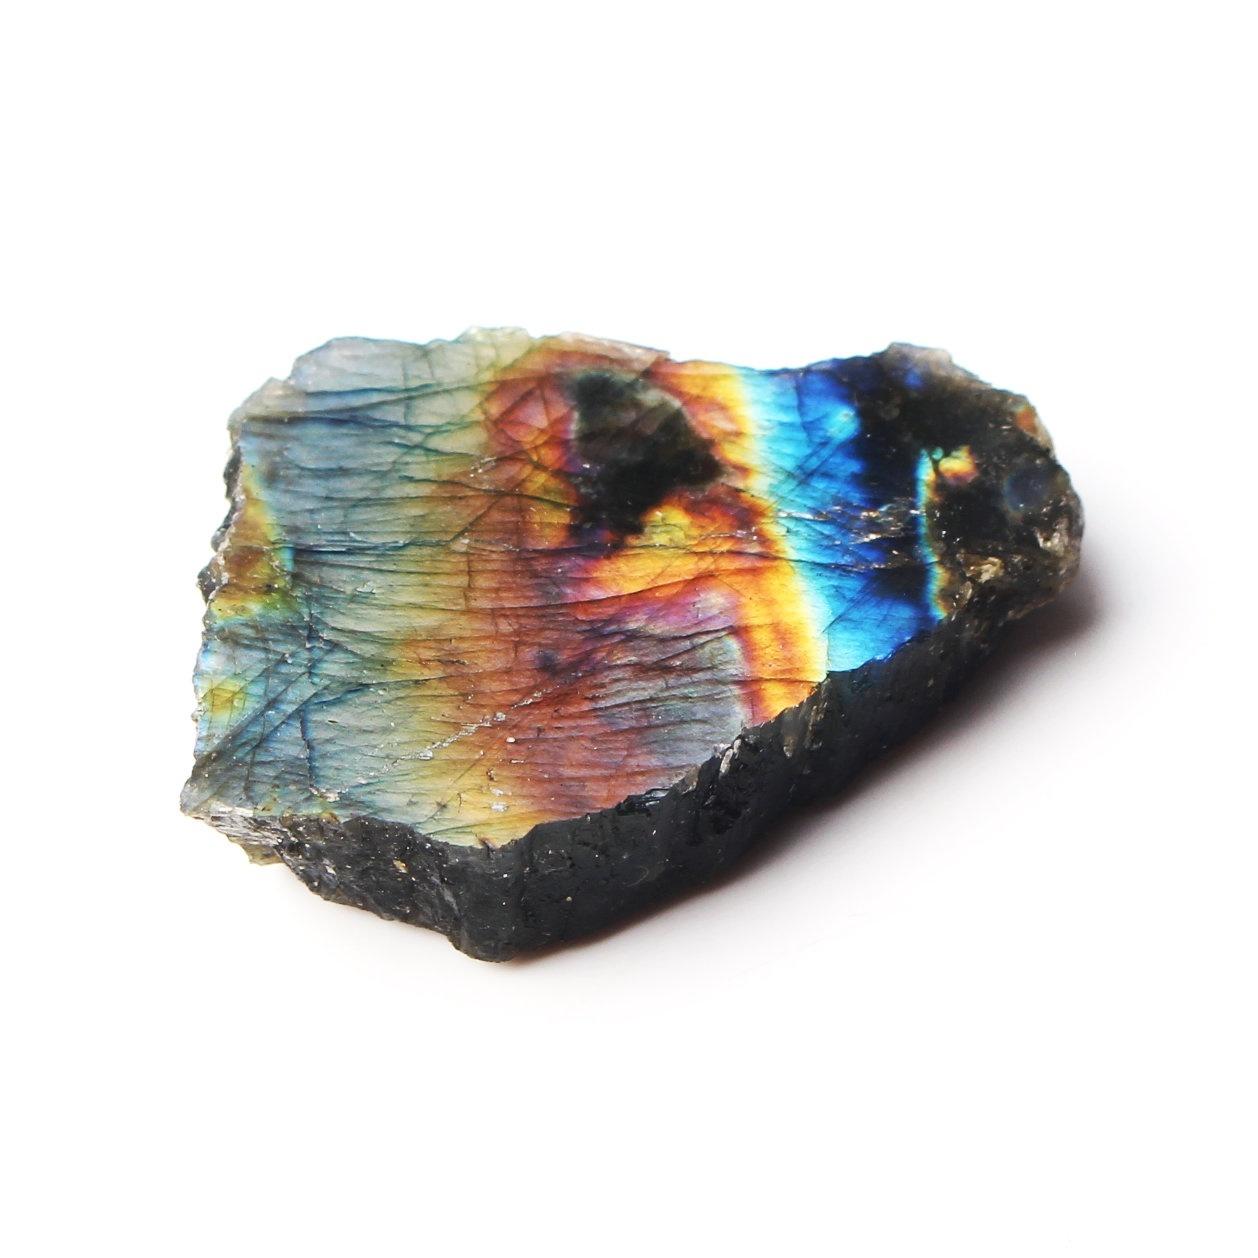 Изображение товара: 1 шт. 20-40 г натуральный Лабрадорит минеральный образец с одной стороны полированный камень грубый камень, реики драгоценный камень Исцеление